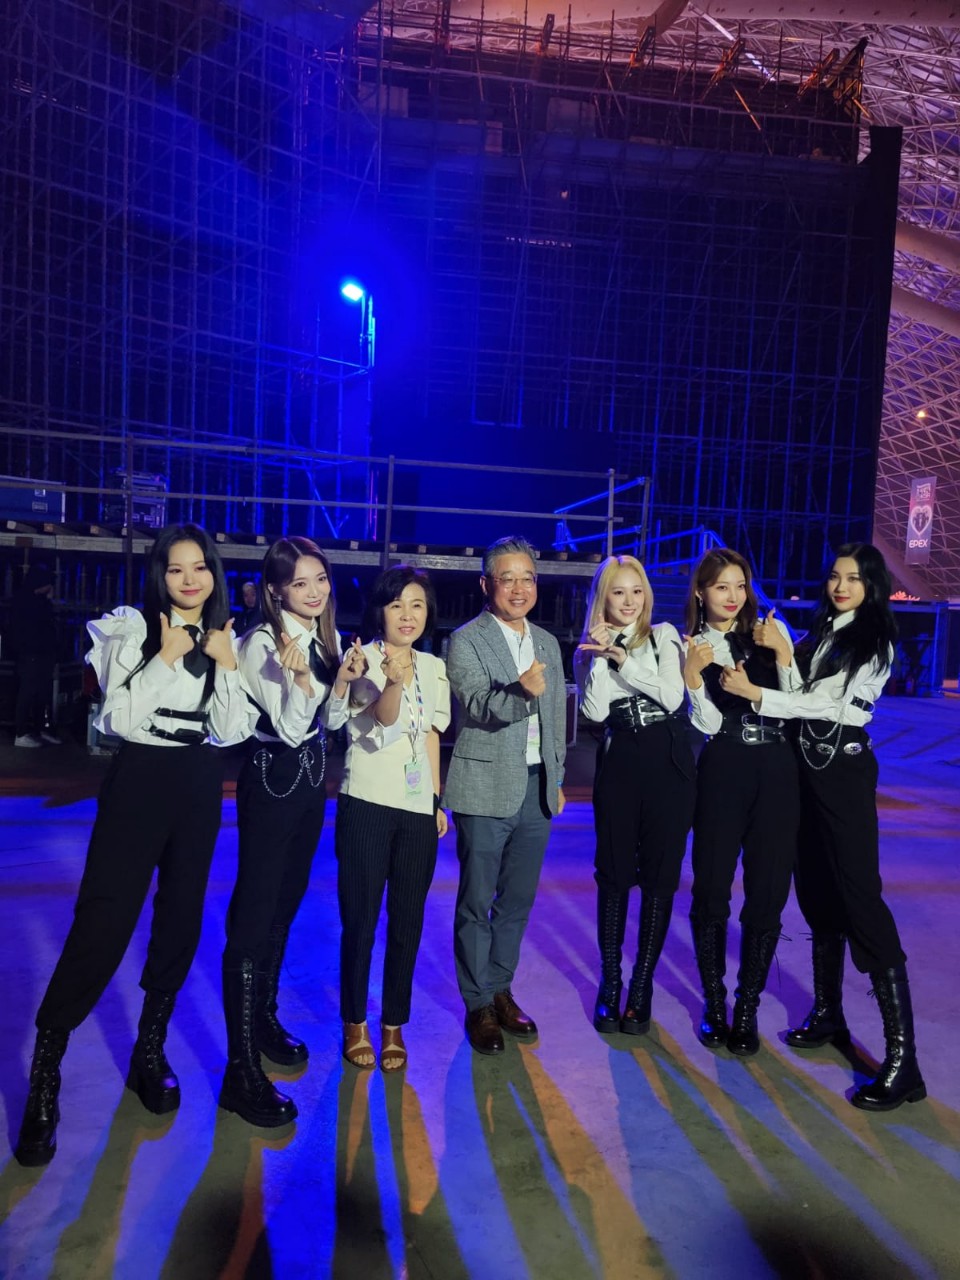 지난해 6월 젯다시즌에 K-pop 페스티벌이 열렸다. 우리 걸그룹 Everglow가 걸그룹으로는 처음으로 사우디에서 공연을 했다.